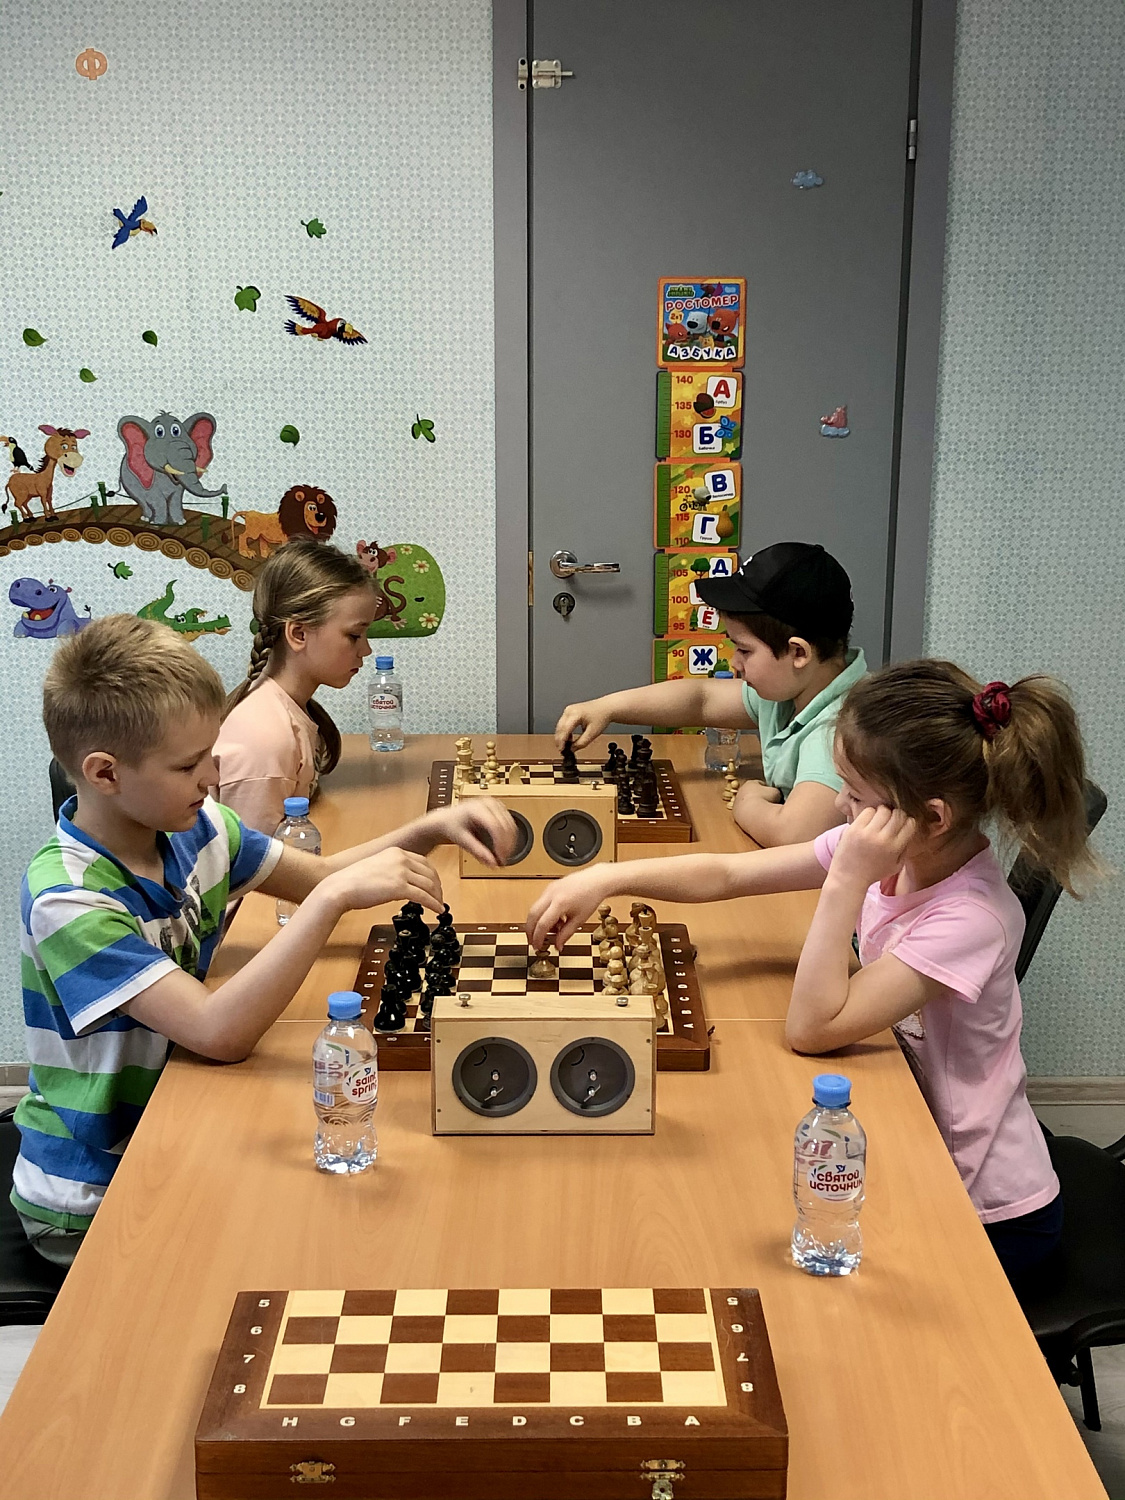 Шахматный турнир в ЖК "Юбилейный квартал"